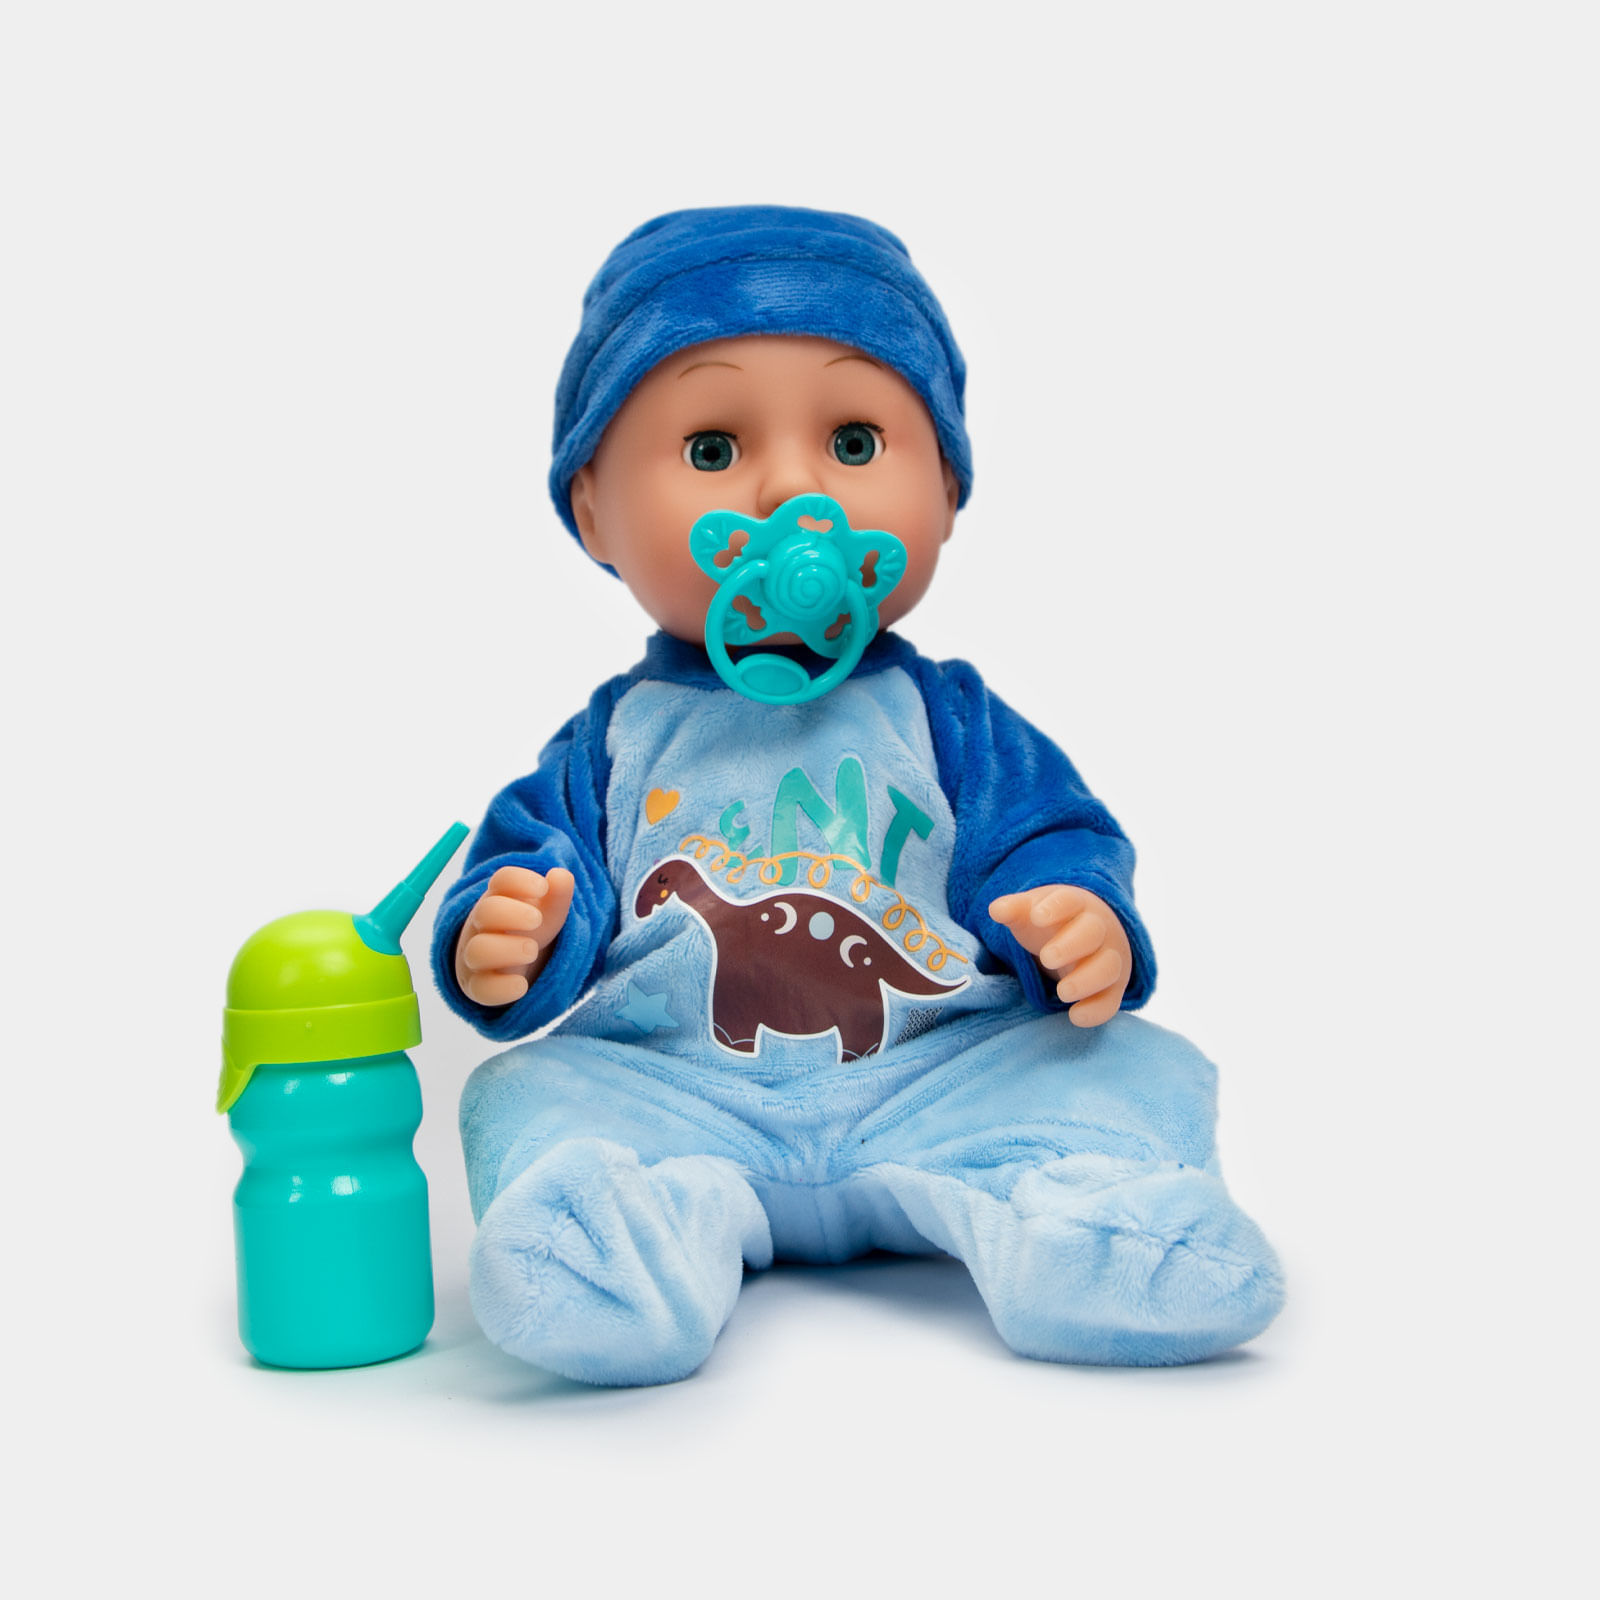 Destruir Cuña Iluminar Bebé de juguete de 36 cm con accesorios, sonido y pijama enteriza